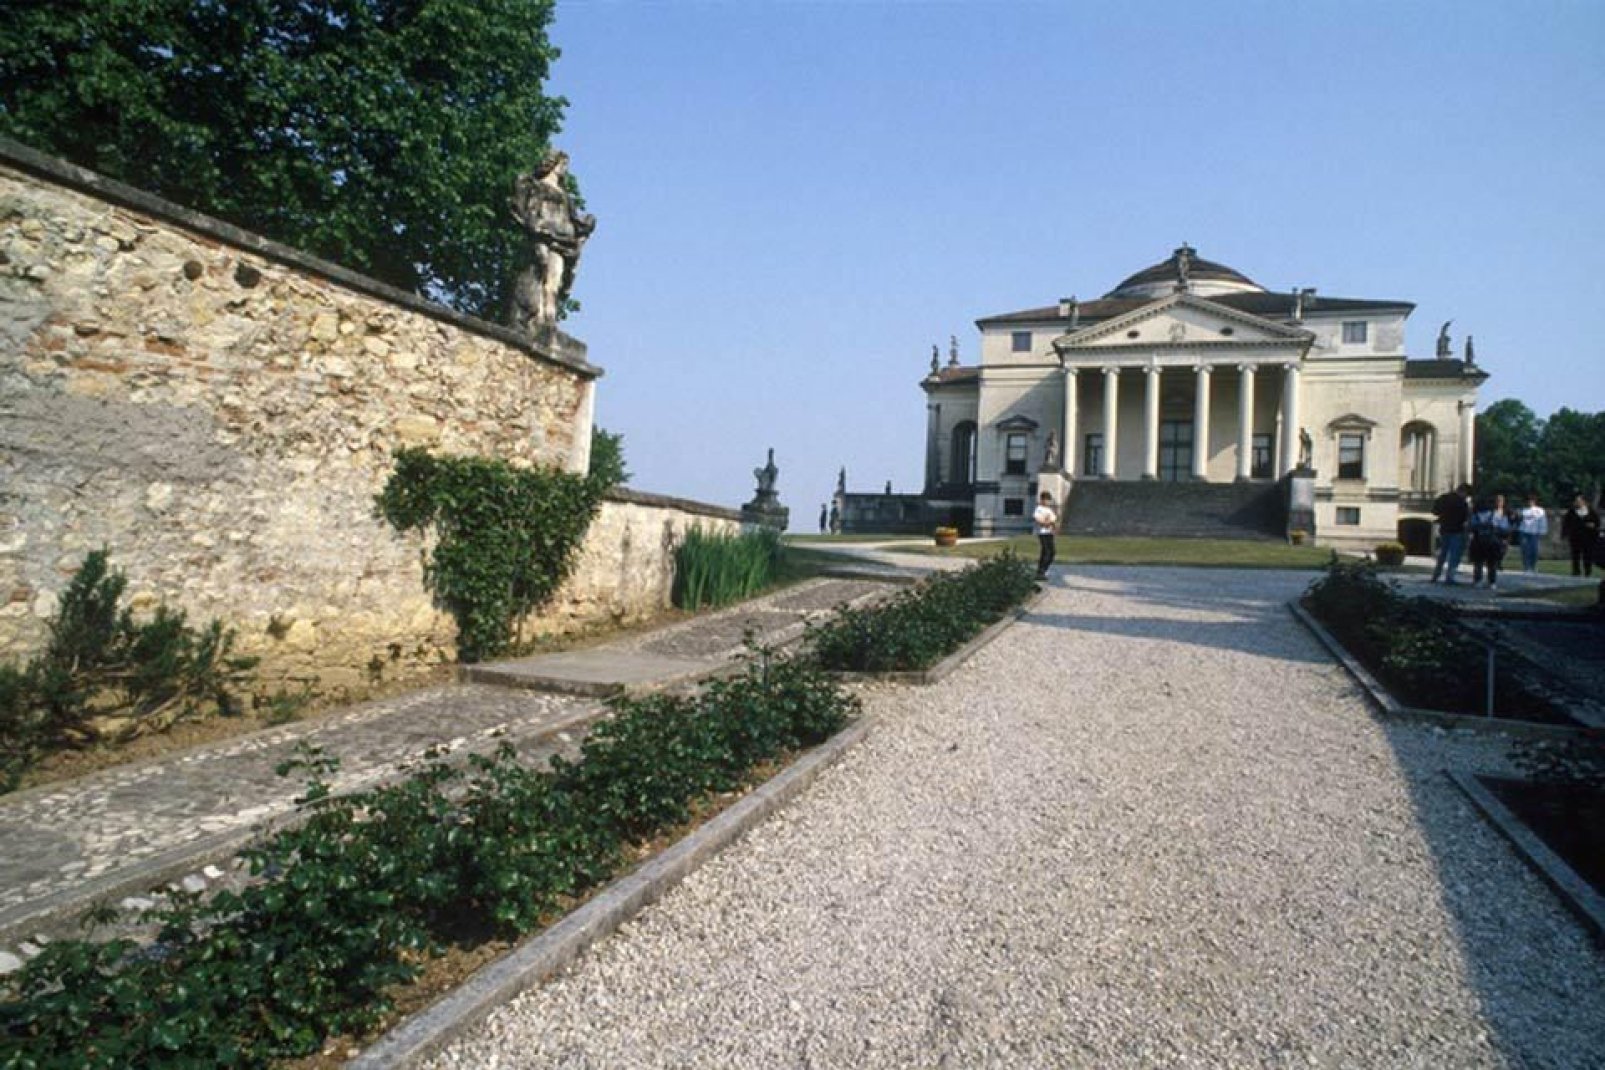 Villa Almerico Capra detta la Rotonda è una villa a pianta centrale situata presso  Vicenza, ideata da Andrea Palladio